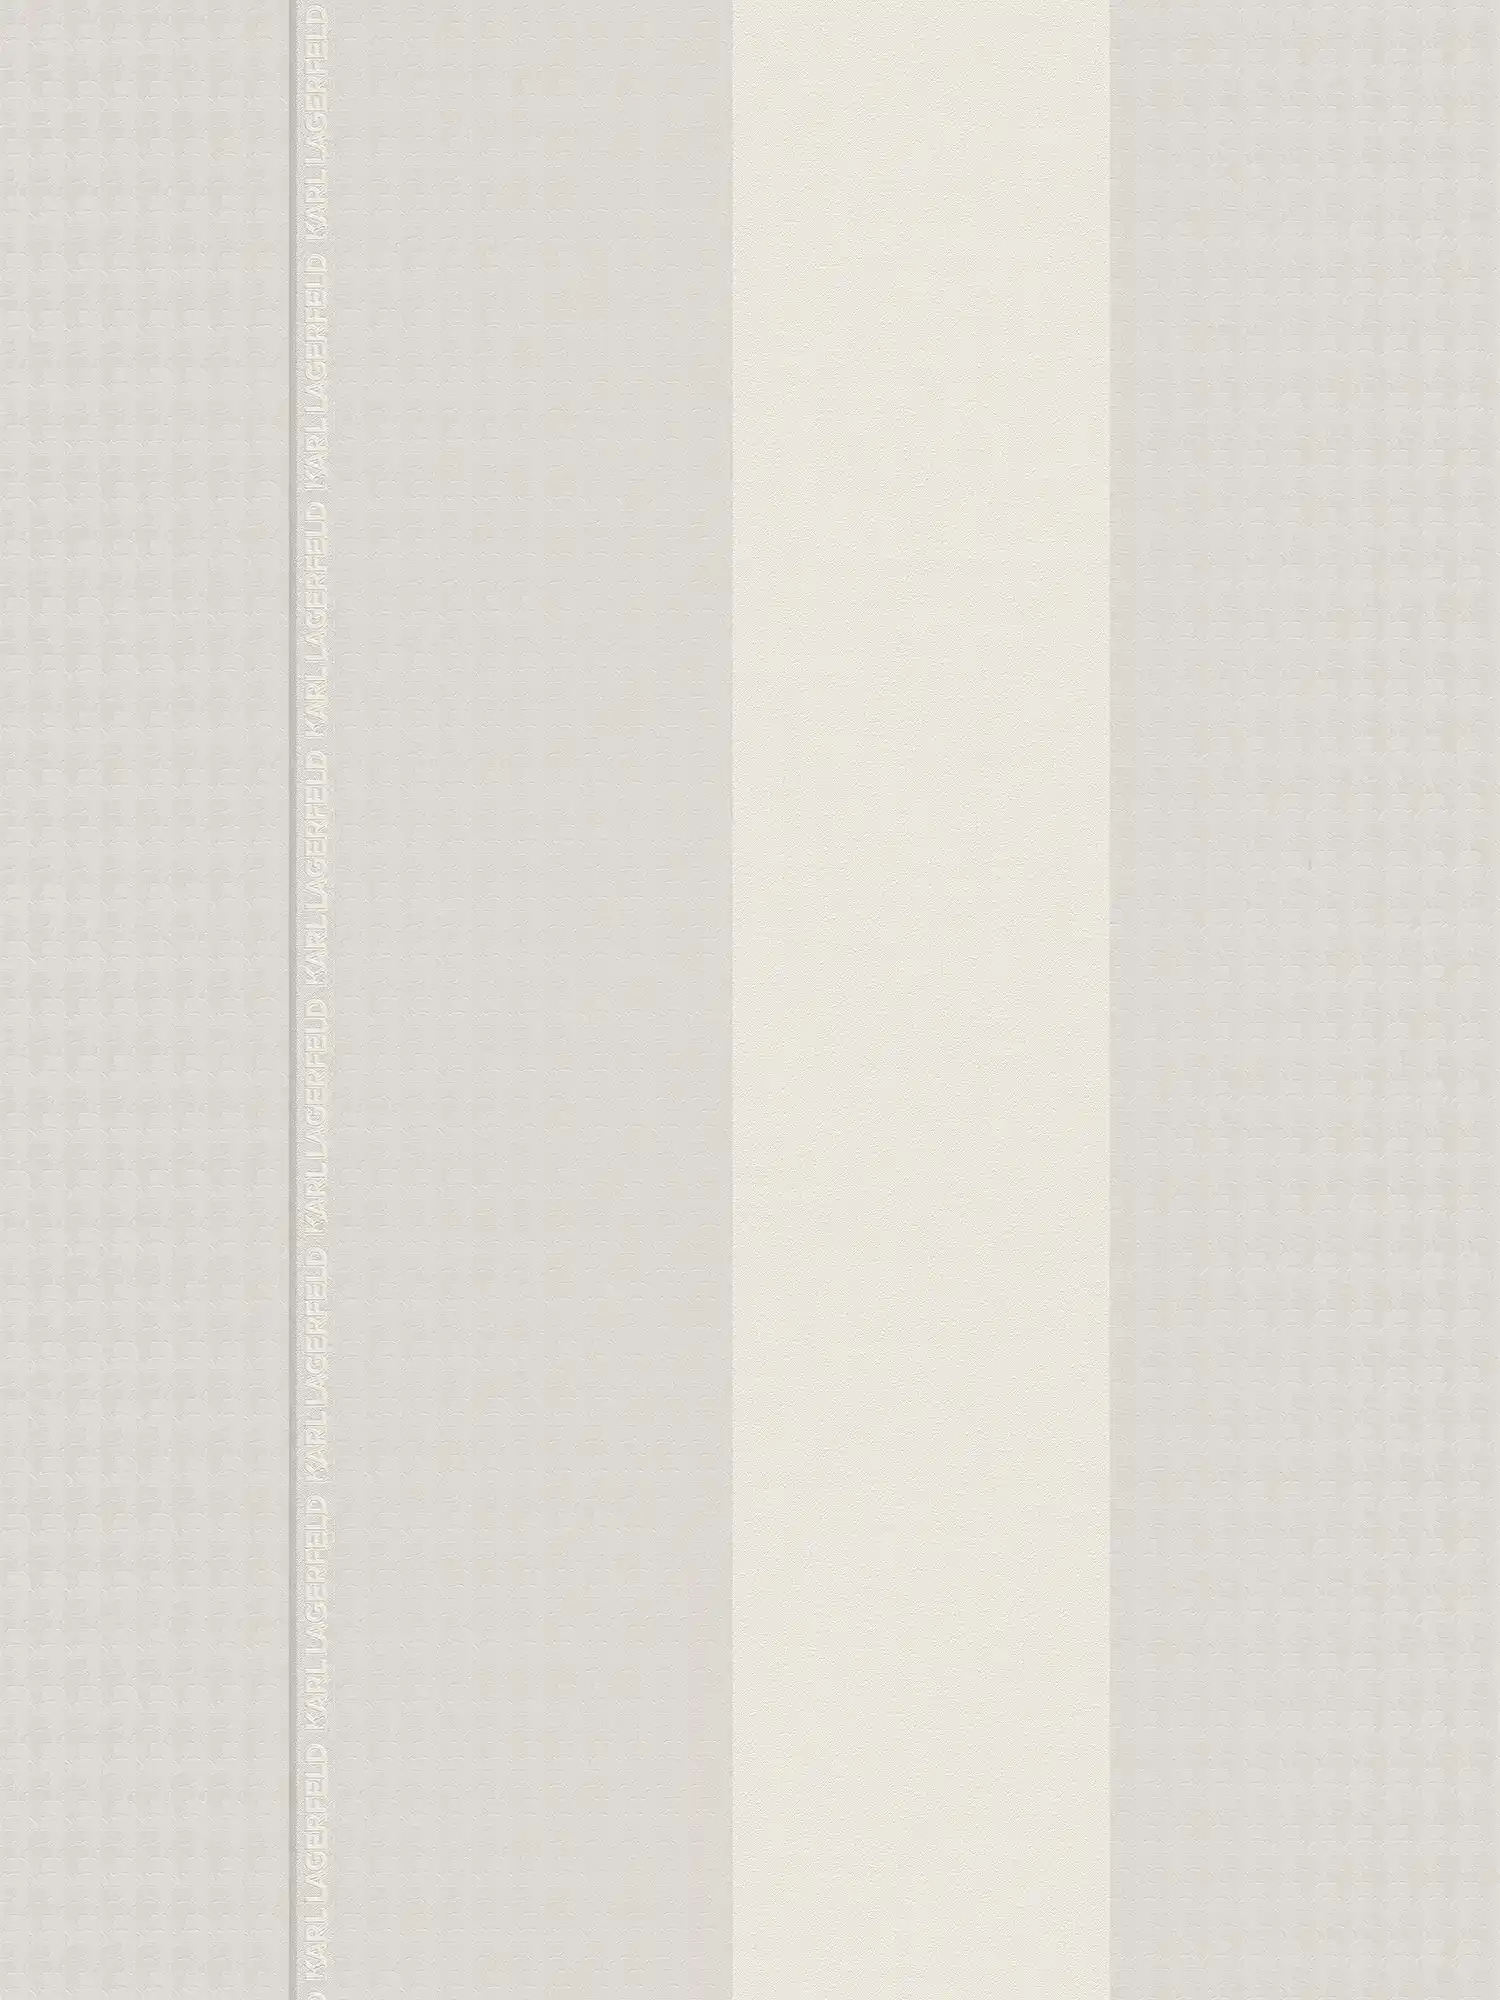 Karl LAGERFELD Carta da parati in tessuto non tessuto a righe con effetto texture - grigio, bianco
